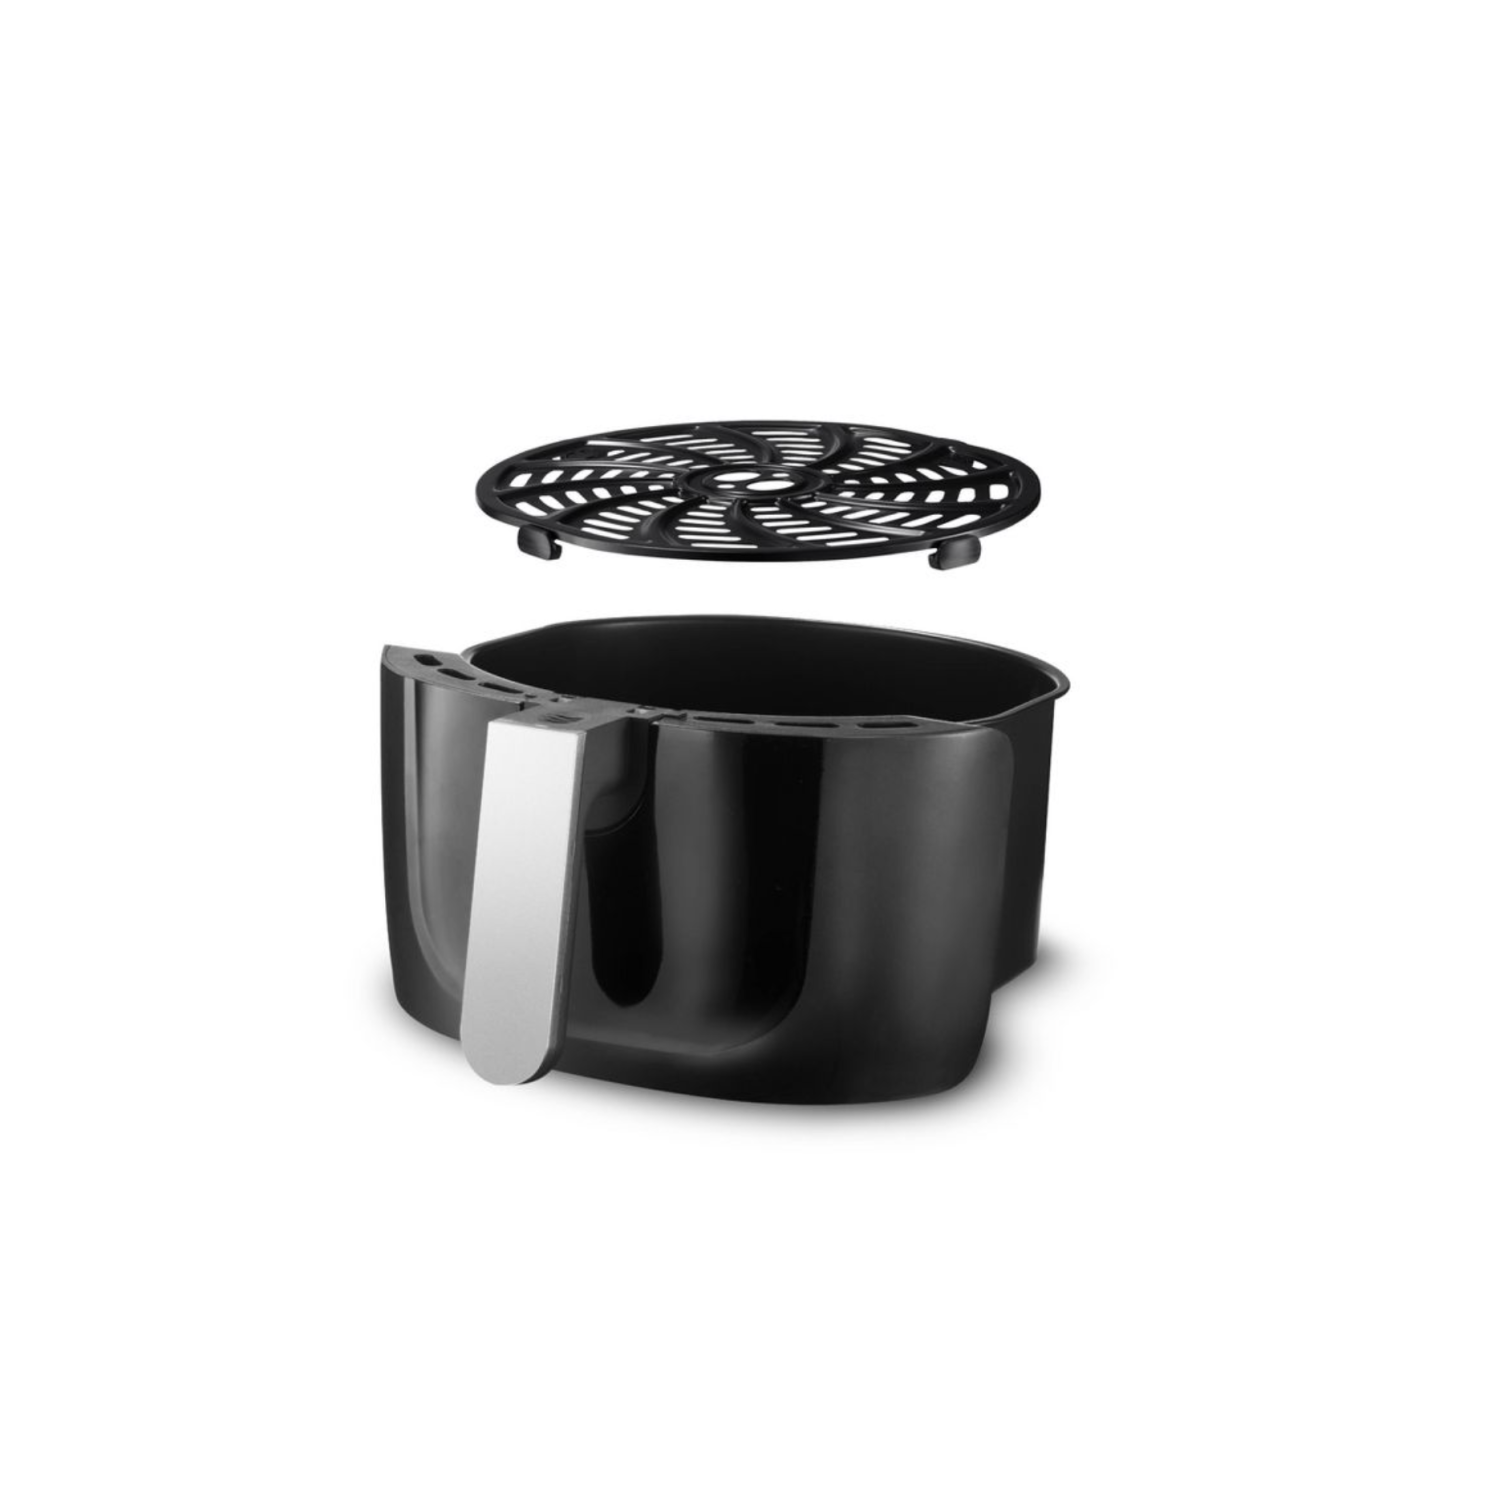 ✓ Gourmia-Digital Air Fryer, 5 QT, 12 Cooking Function